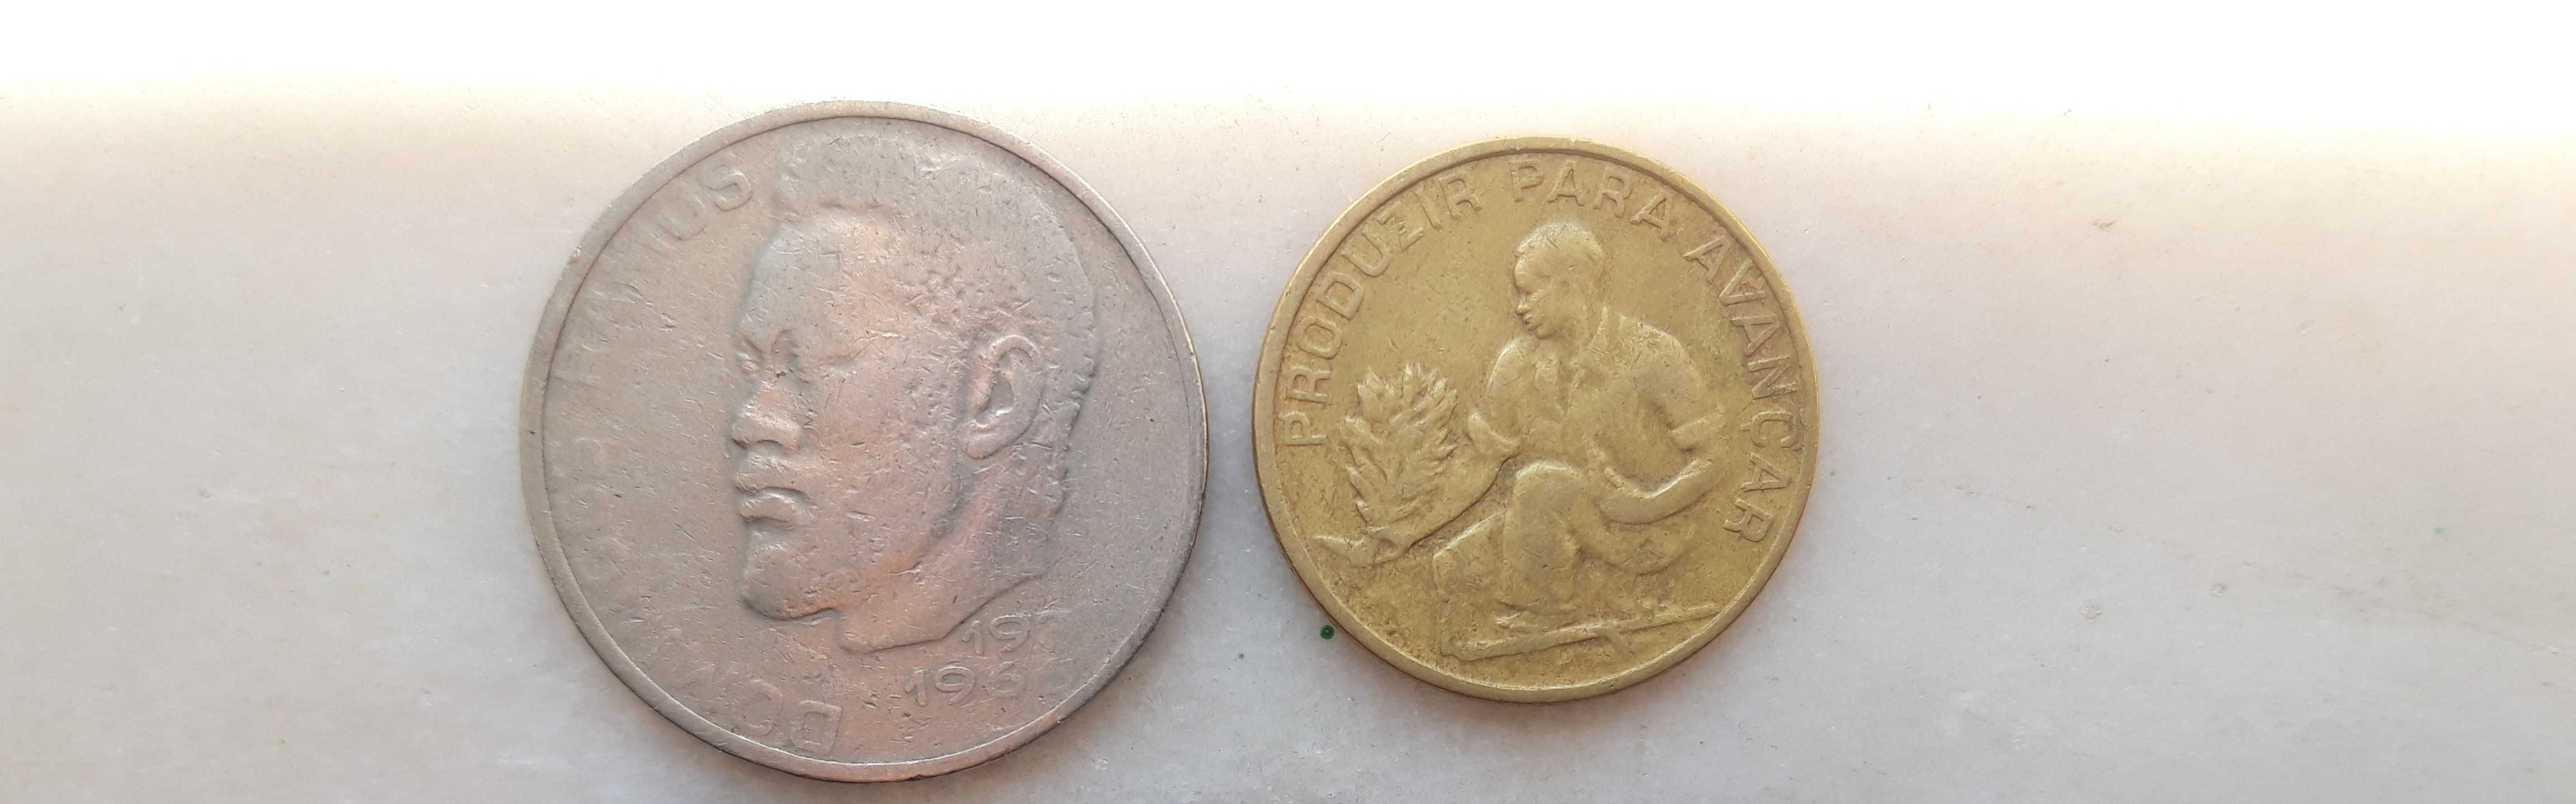 Conjunto moedas antigas Cabo Verde